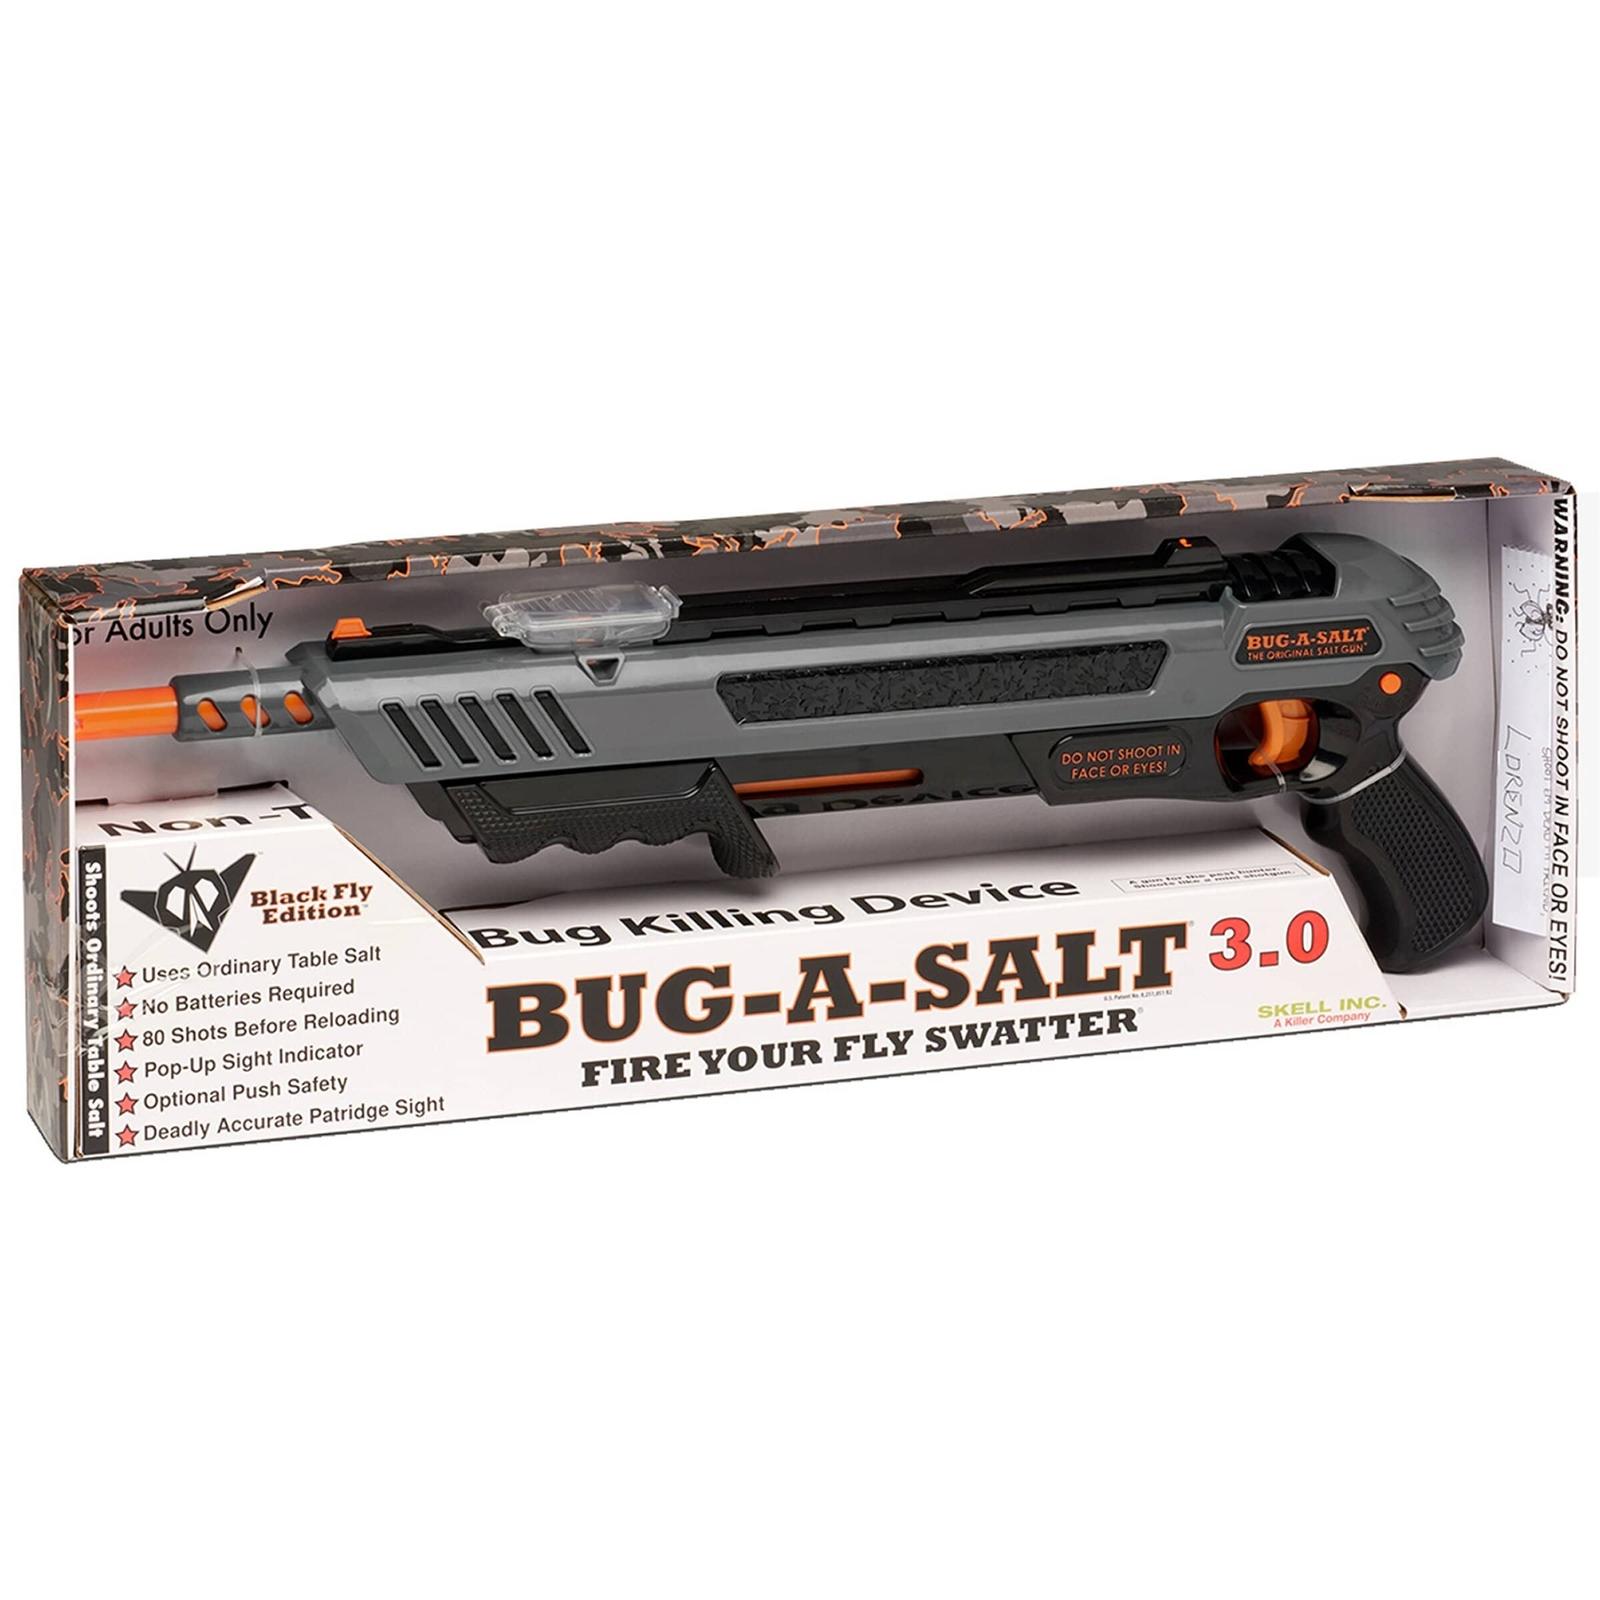 Bug-A-Salt Black Fly Edition 3